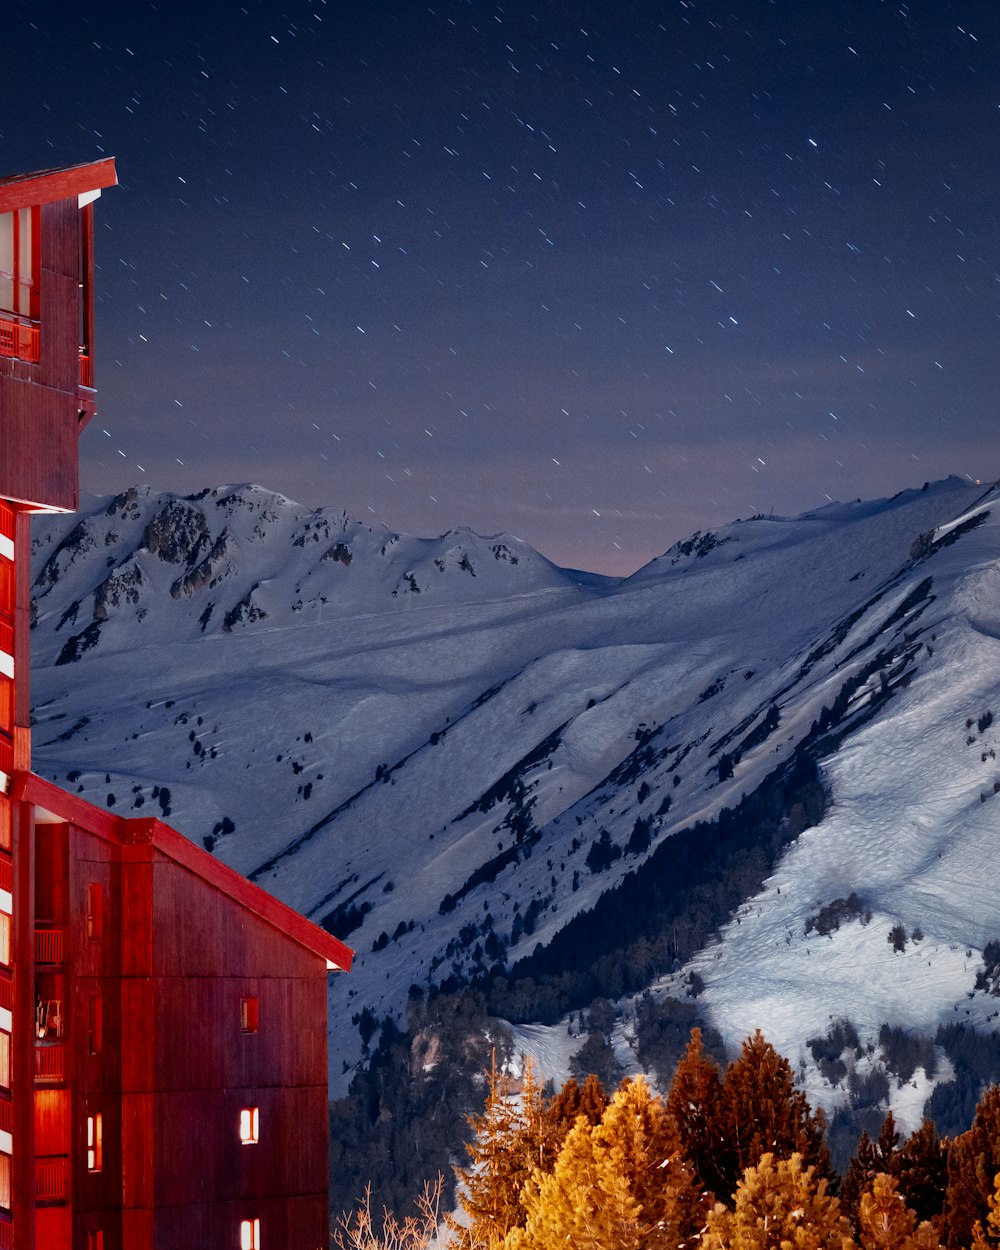 um edifício vermelho alto sentado ao lado de uma montanha coberta de neve